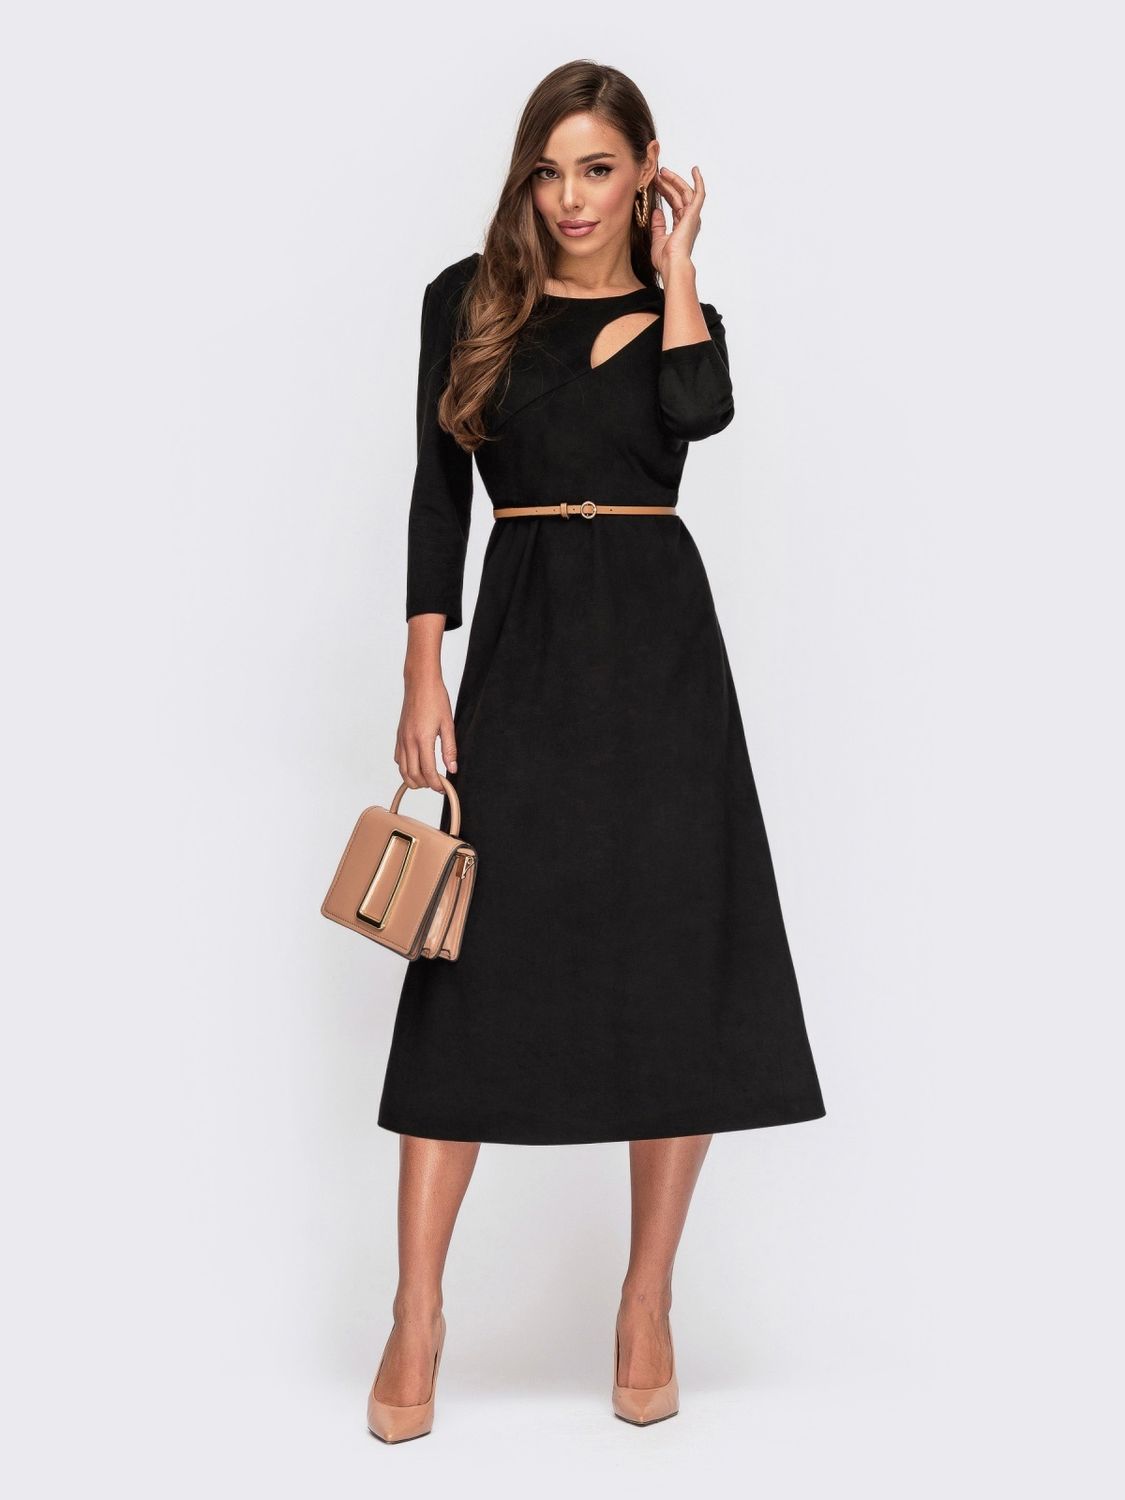 Черное замшевое платье с юбкой солнце-клеш - фото